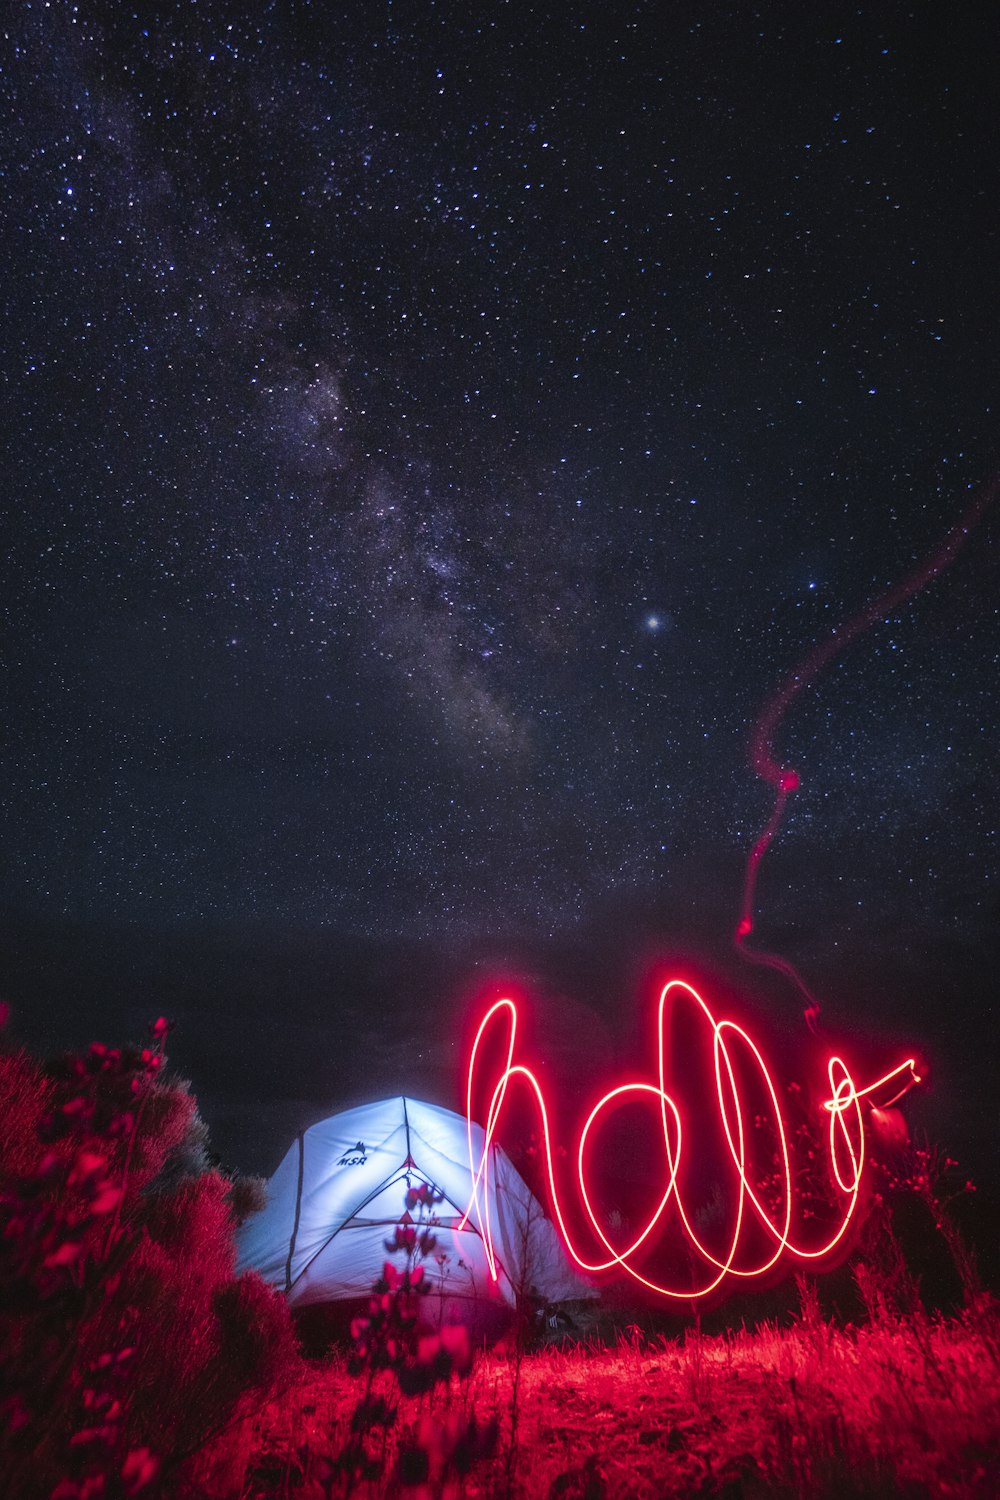 roter Lichtstreifen in der Nähe des beleuchteten Zeltes unter dem Sternenhimmel